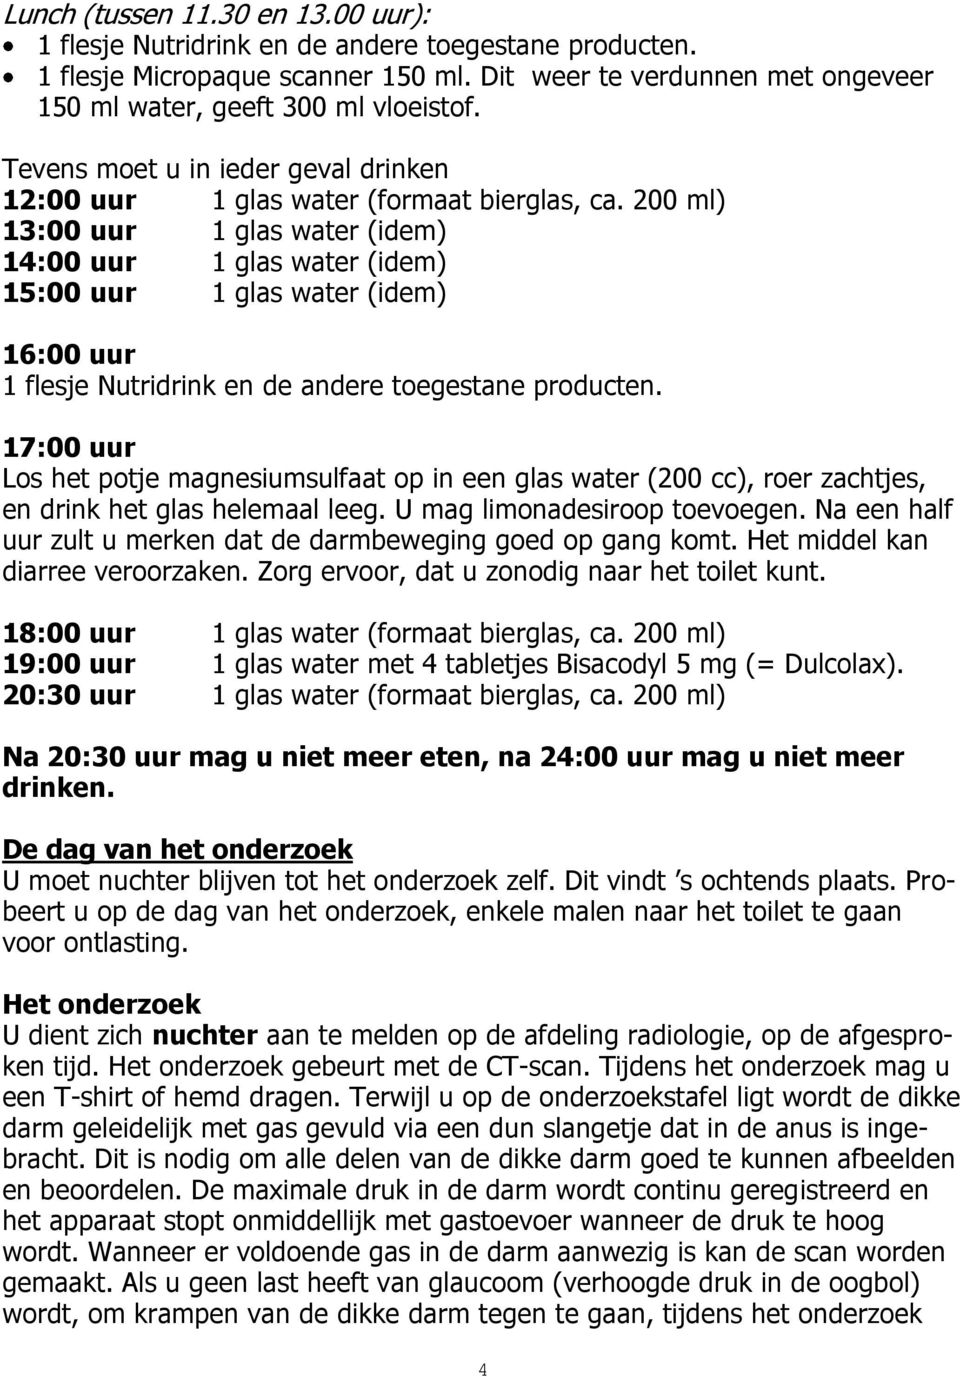 200 ml) 13:00 uur 1 glas water (idem) 14:00 uur 1 glas water (idem) 15:00 uur 1 glas water (idem) 16:00 uur 1 flesje Nutridrink en de andere toegestane producten.